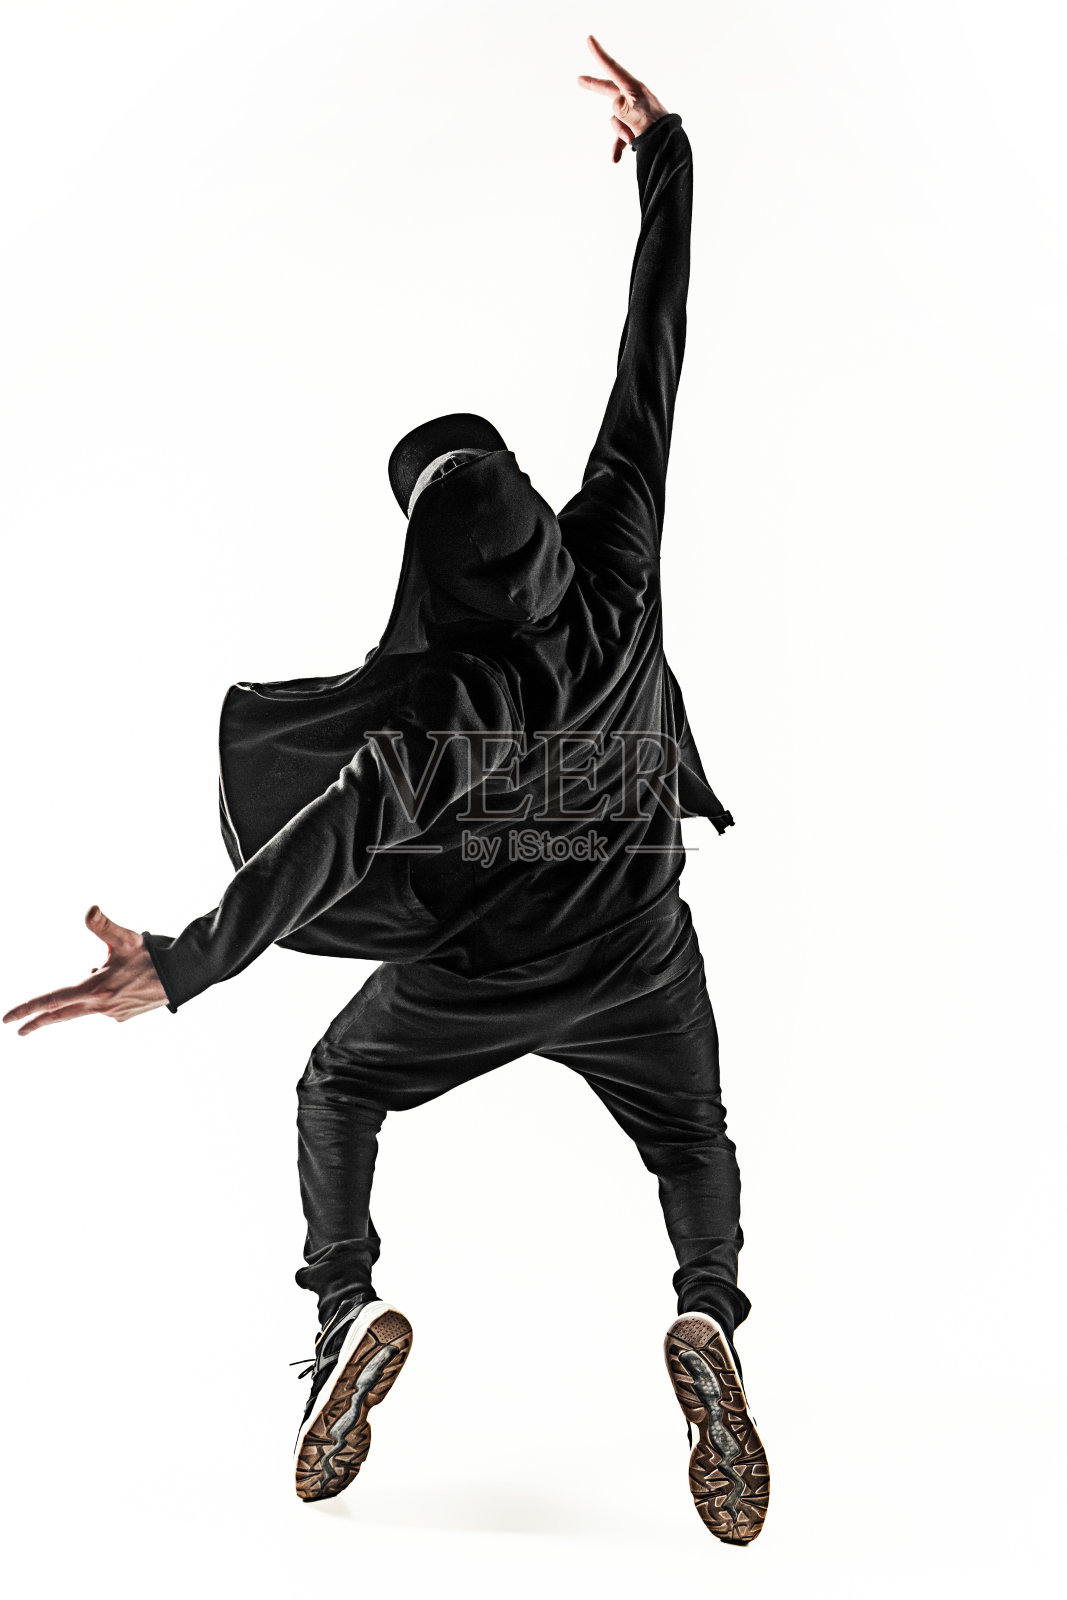 一个嘻哈男霹雳舞舞者的剪影在白色的背景上跳舞照片摄影图片